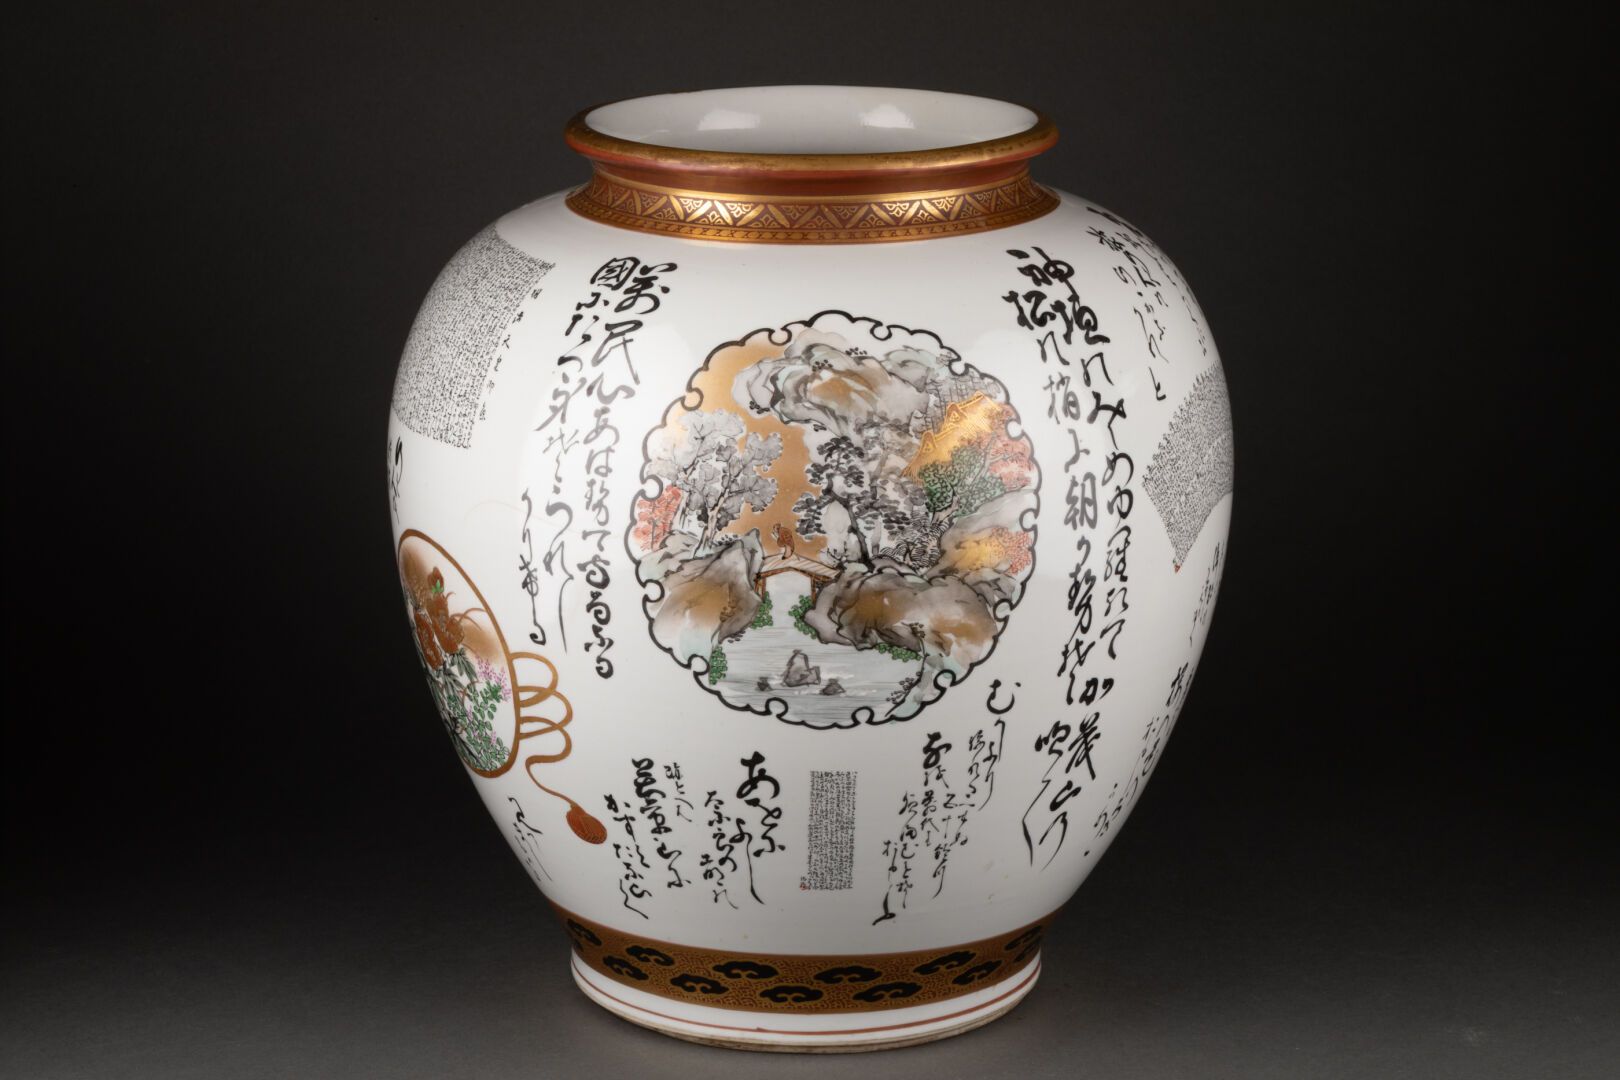 JAPON - XXe siècle 窄颈球型花瓶，装饰有卡特尔山水和表意文字

瓷器，多色珐琅和金色亮点

H.29厘米

裂缝